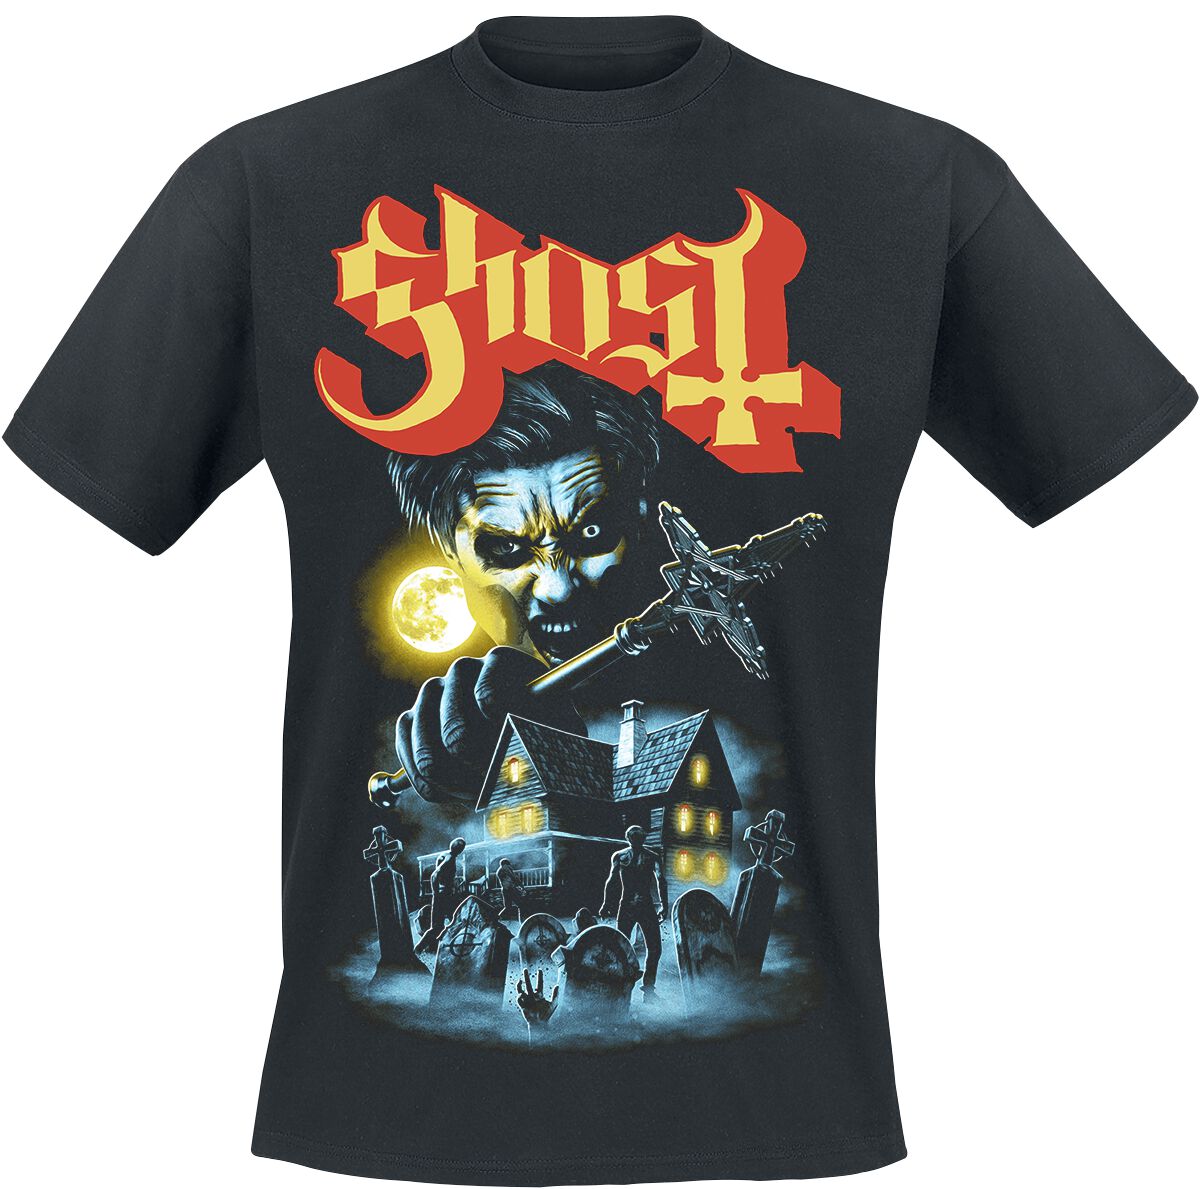 Ghost T-Shirt - By The Cemetery - S bis 4XL - für Männer - Größe S - schwarz  - Lizenziertes Merchandise!